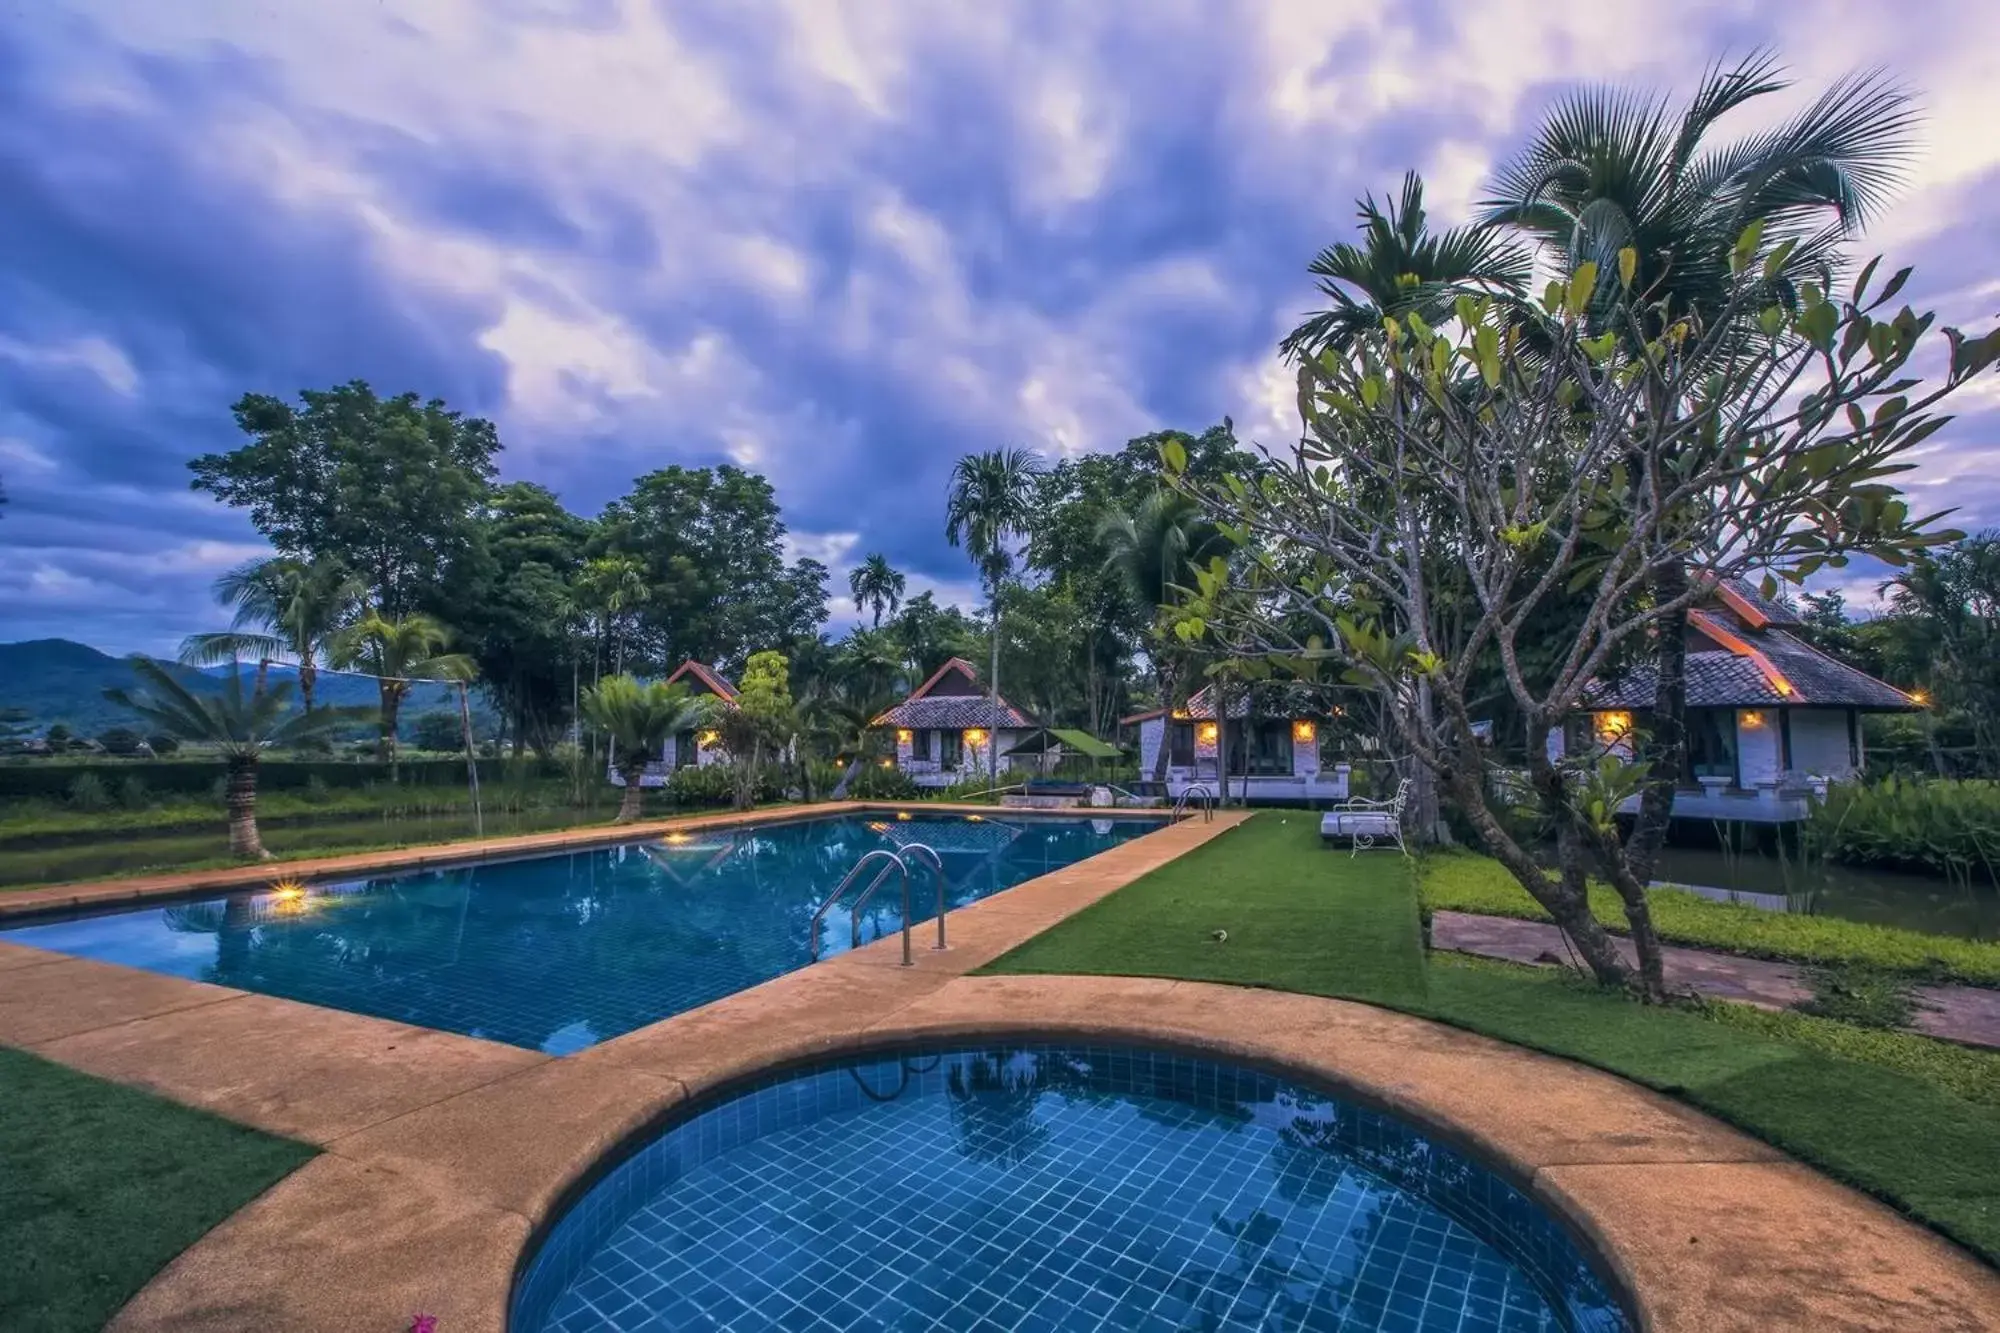 Swimming Pool in Bura Lumpai Resort